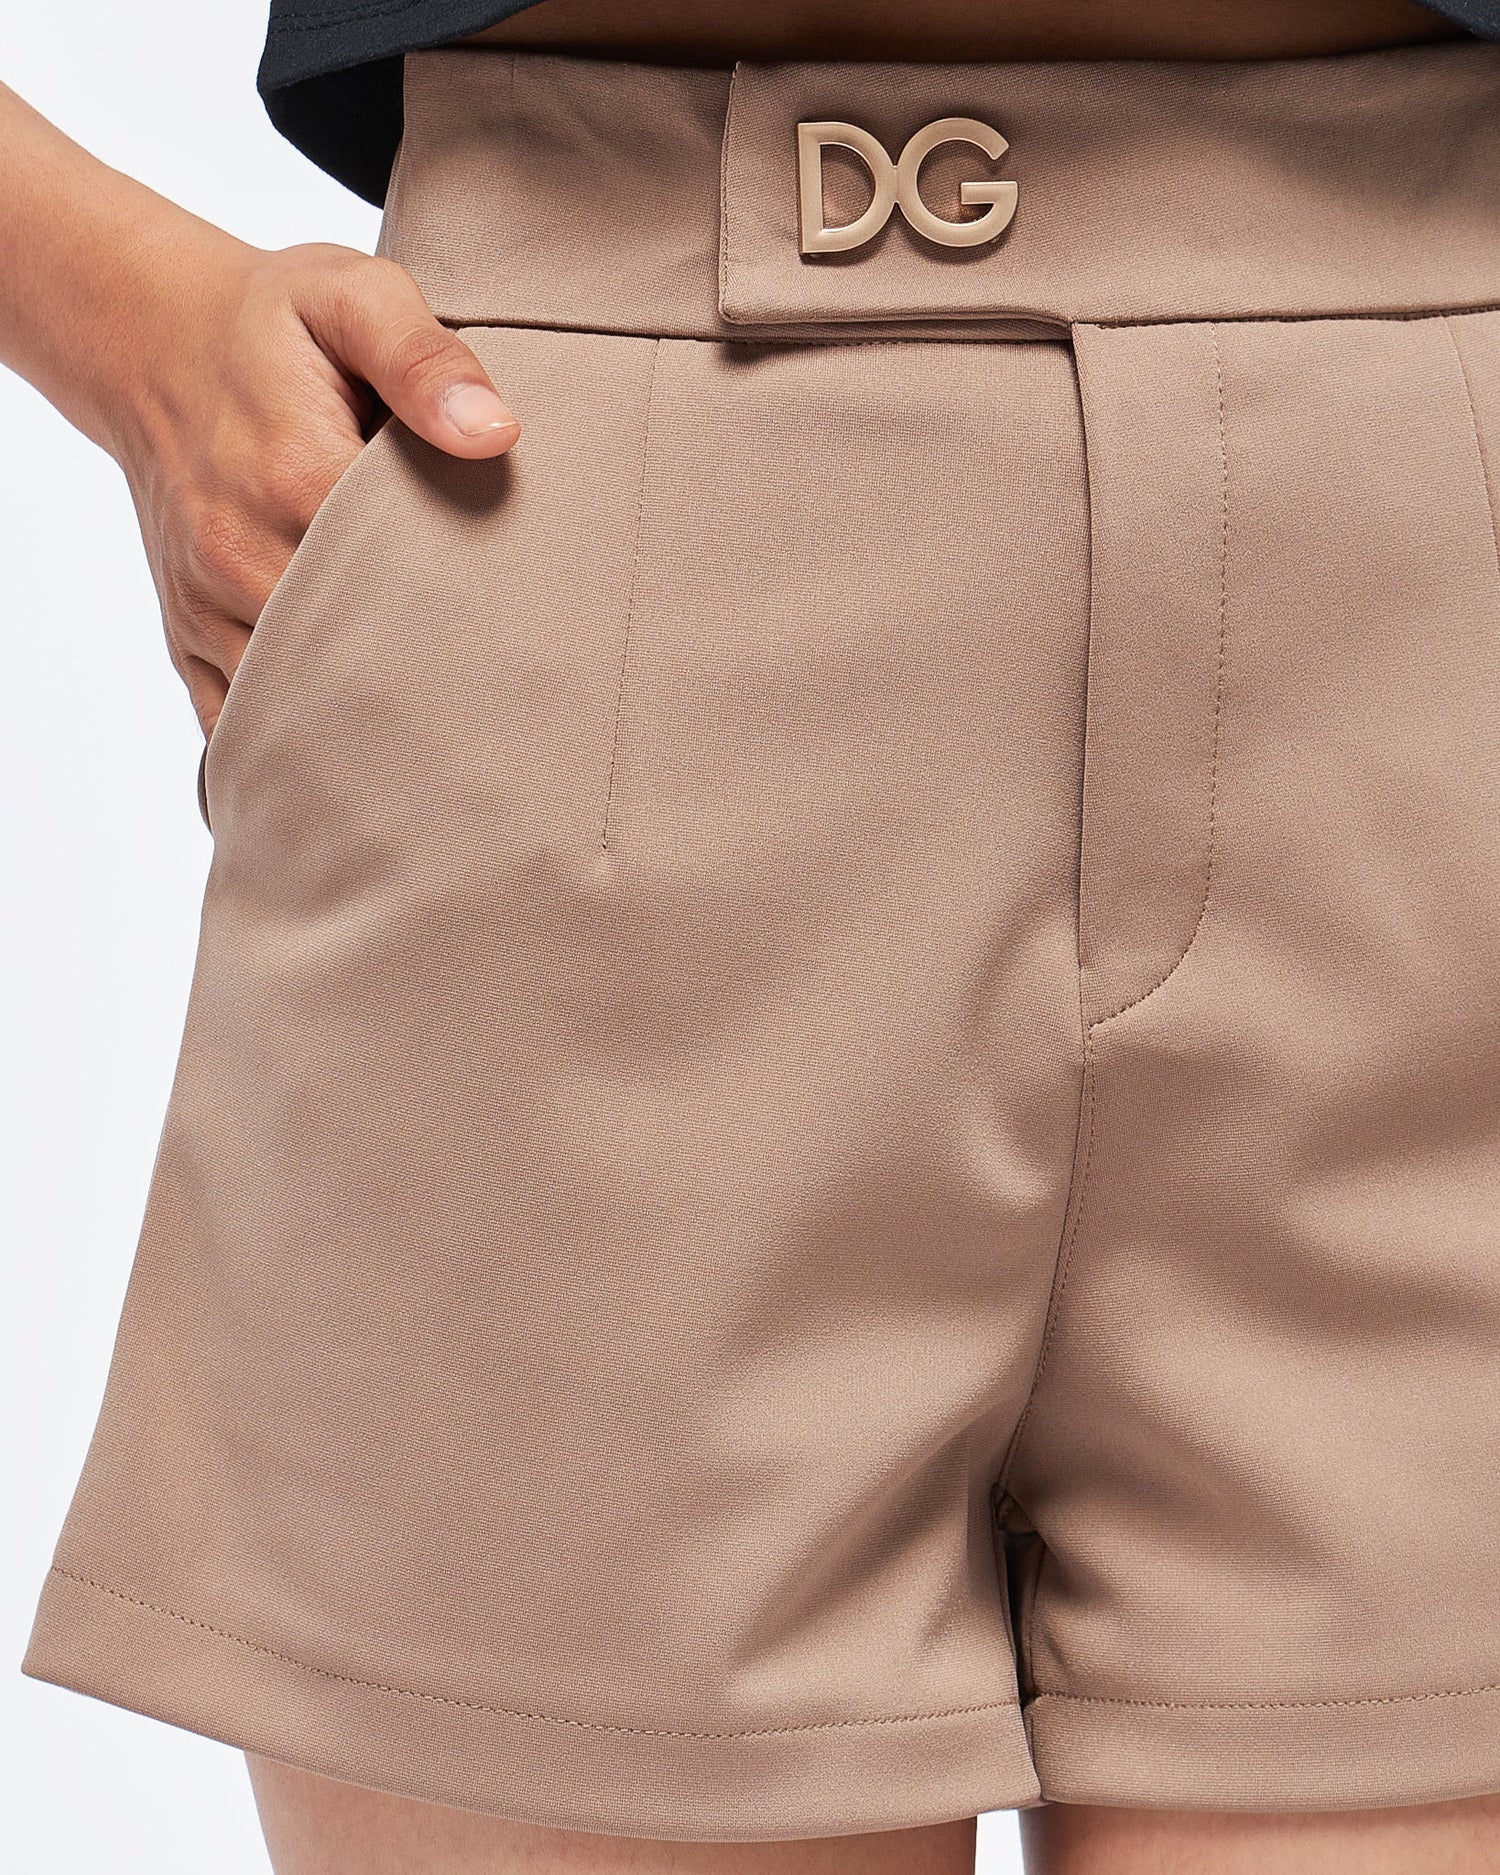 MOI OUTFIT-DG Lady Short Pants 13.90